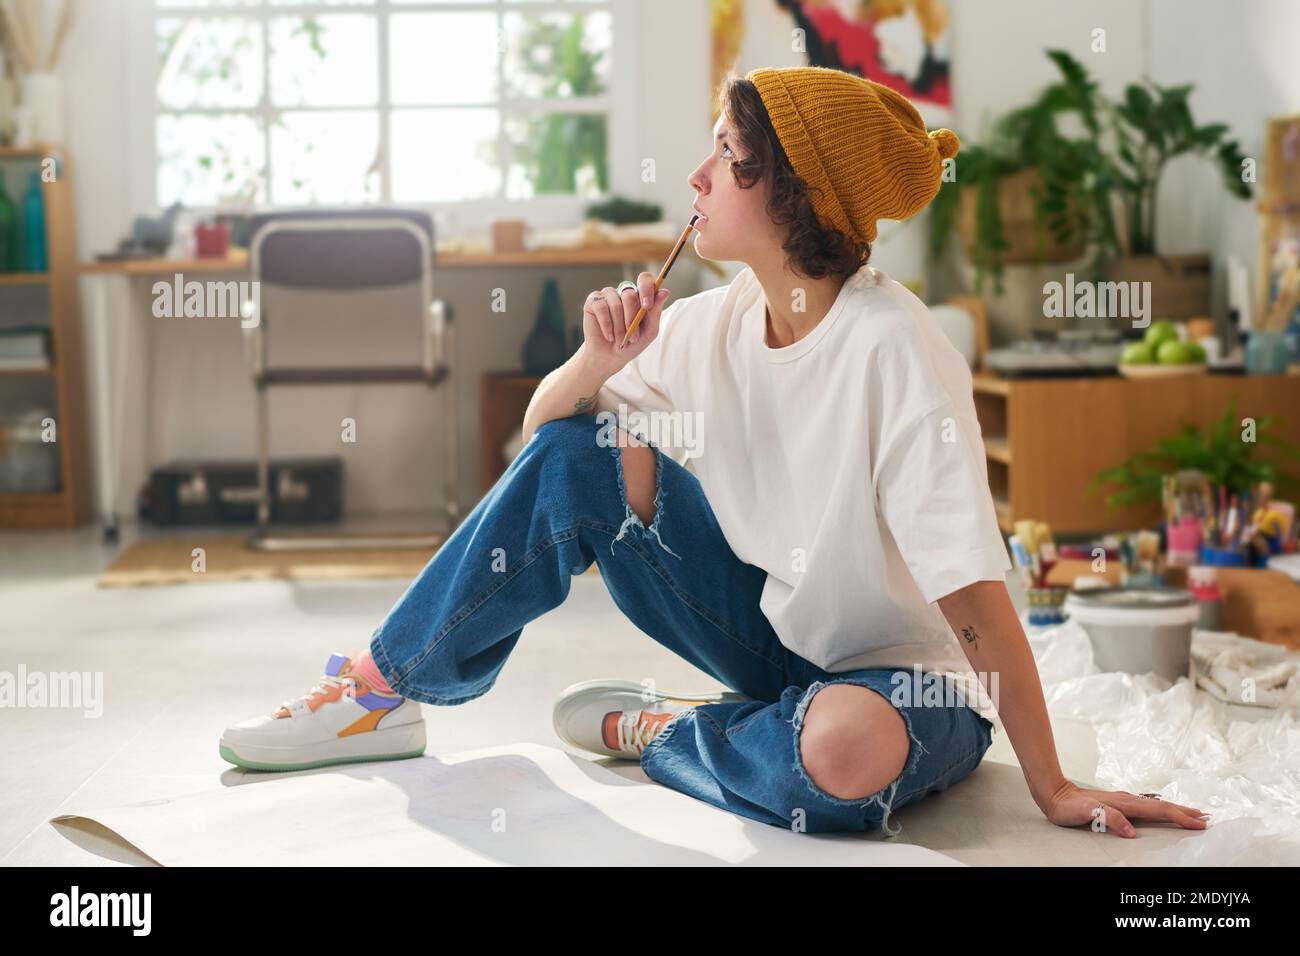 Eine junge nachdenkliche Frau in Freizeitkleidung, die einen Bleistift am Mund hält, während sie mit Papier auf dem Boden sitzt und an neue Kunstwerke denkt Stockfoto